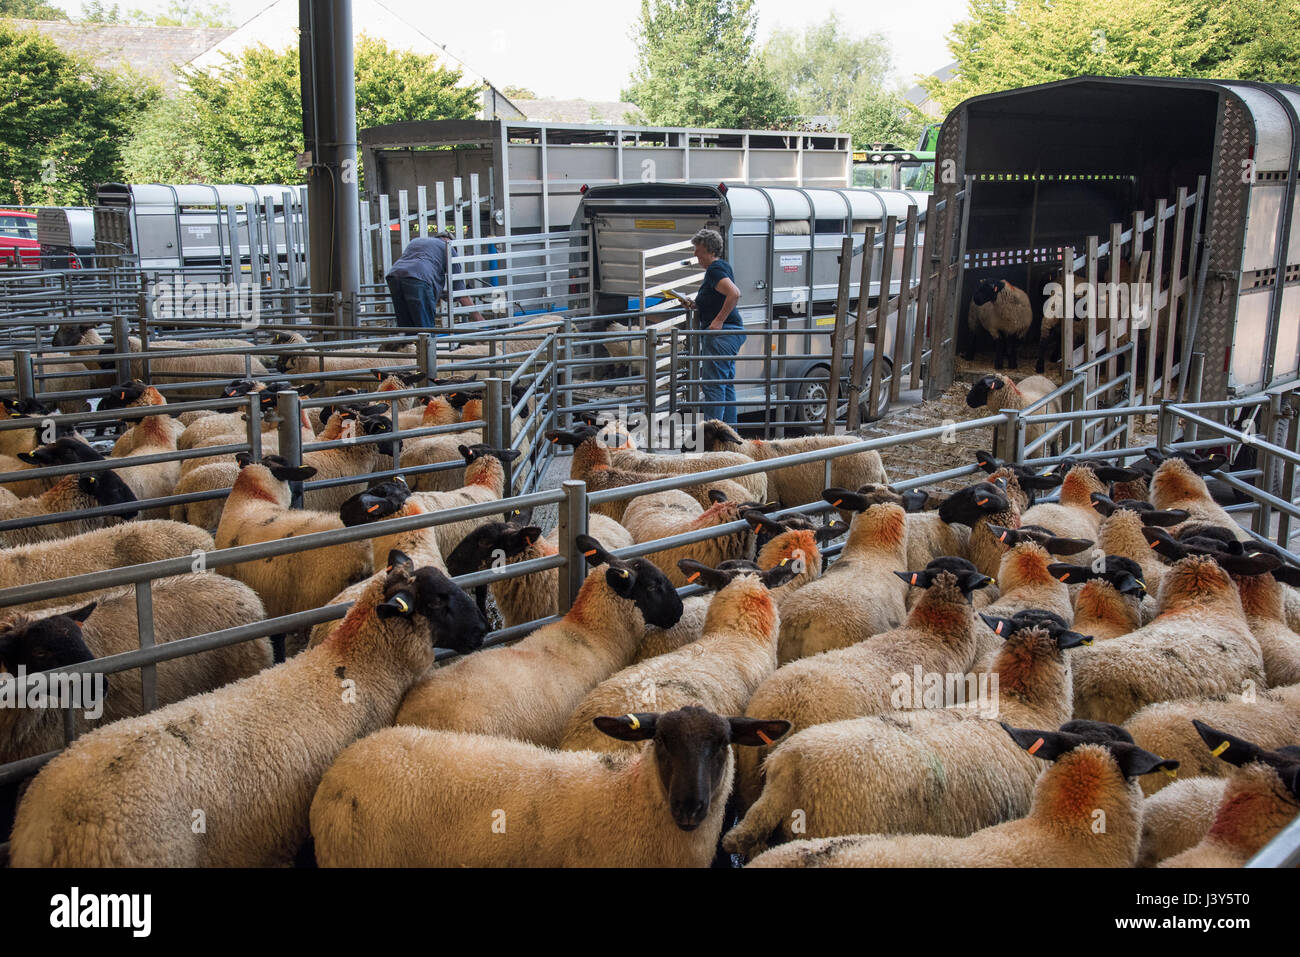 Lo scarico di ovini a Bakewell mercato del bestiame, Bakewell, Derbyshire. Foto Stock